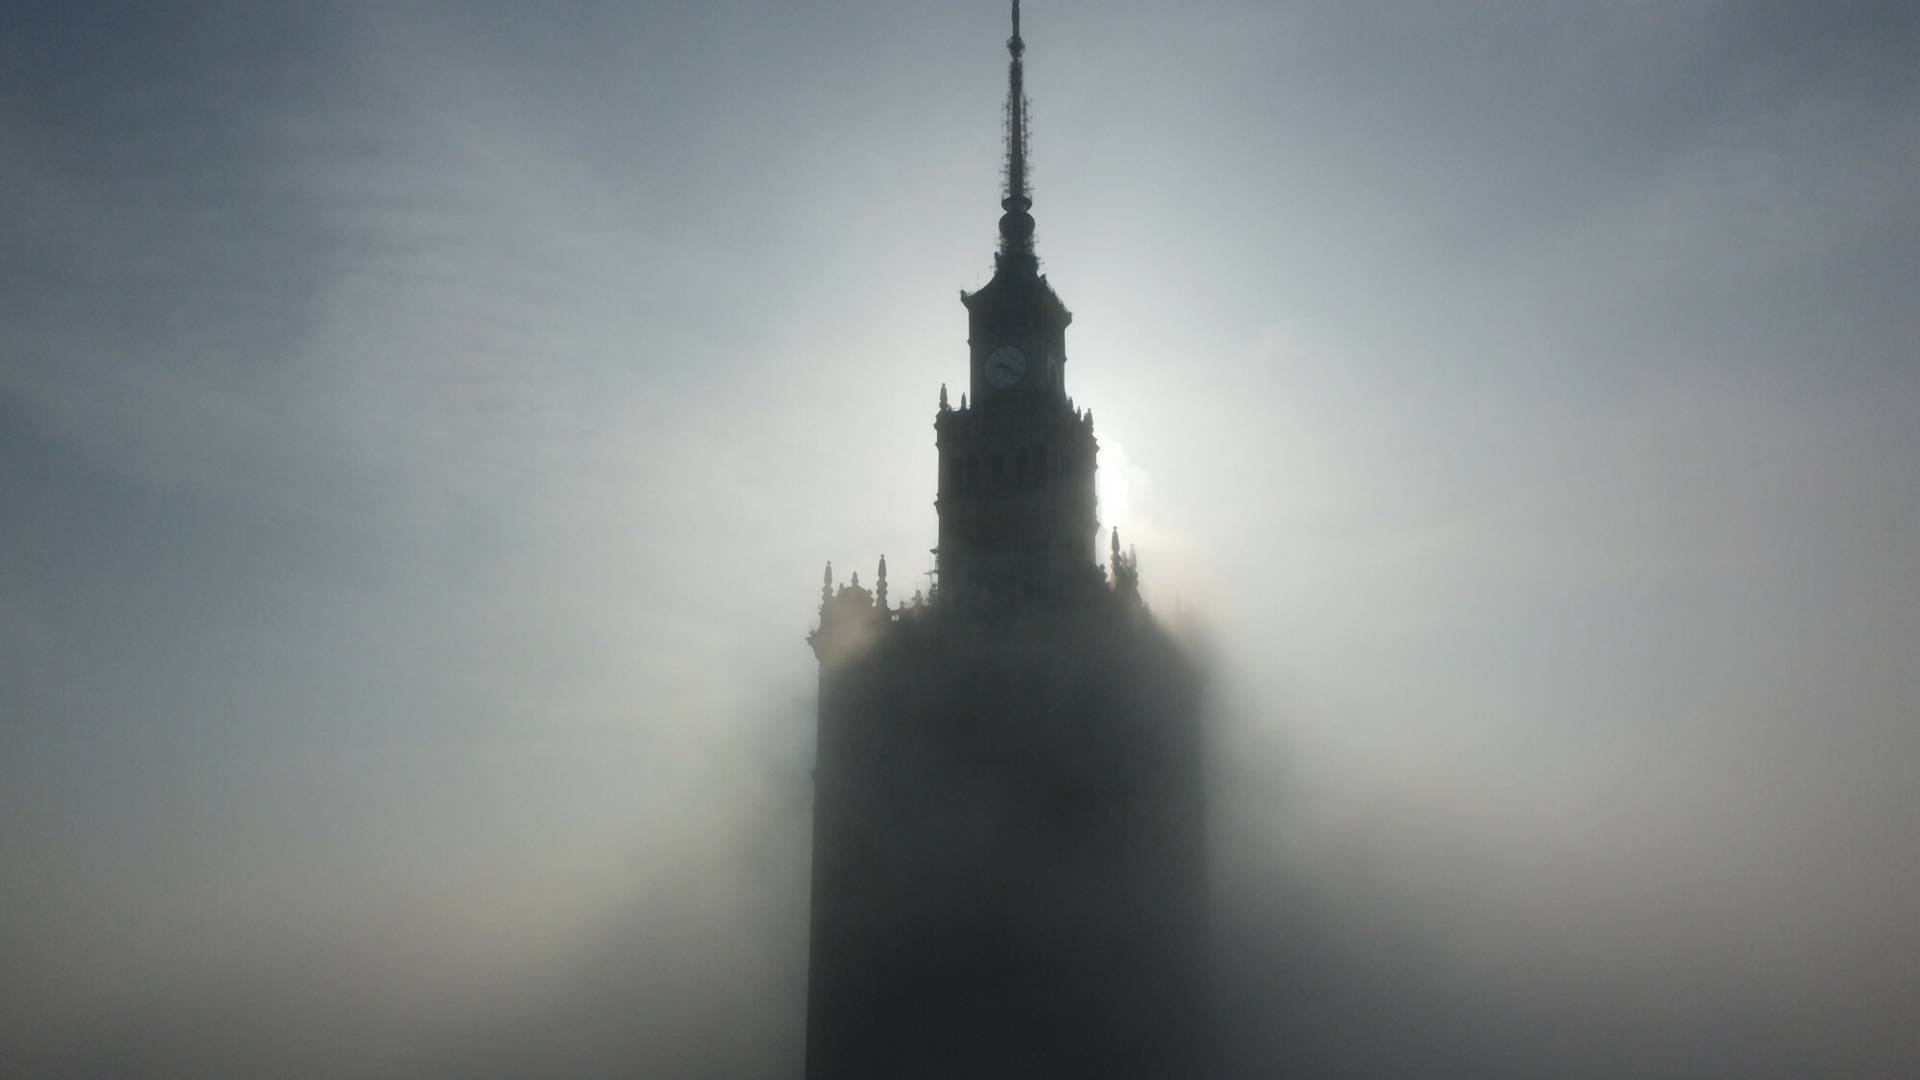 Warszawa pokonała Kalkutę. Jest drugim miastem z najgorszym powietrzem na świecie